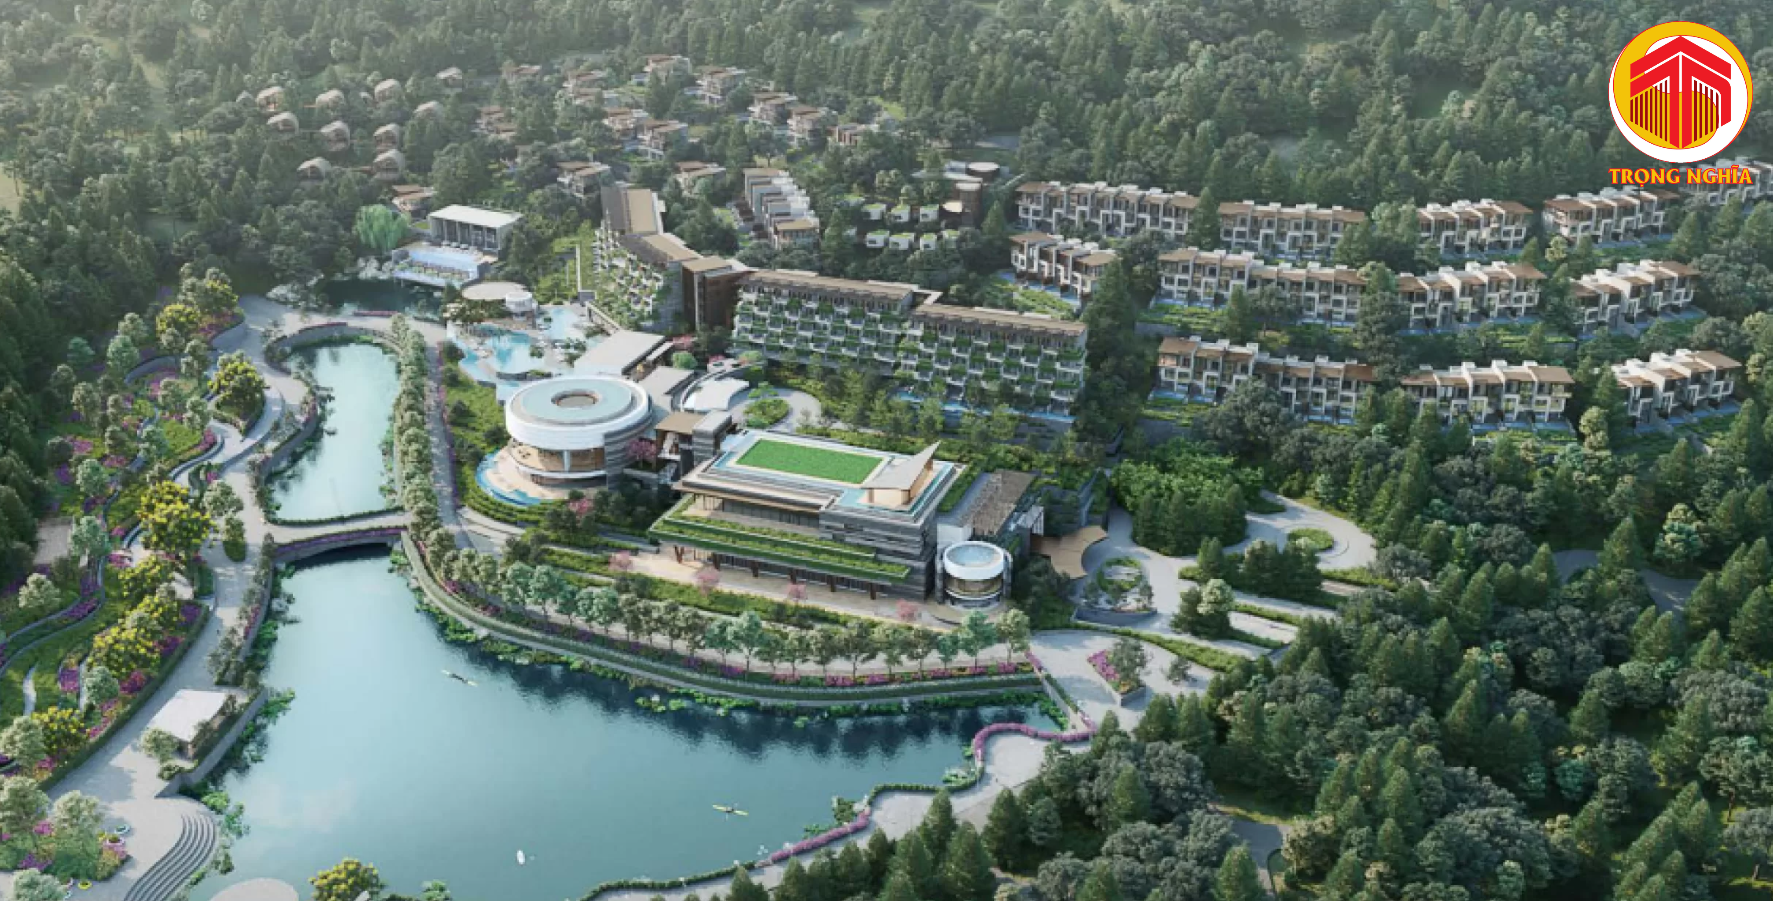 Lý do InterContinental chọn triển khai dự án tại Thanh Xuan Valley